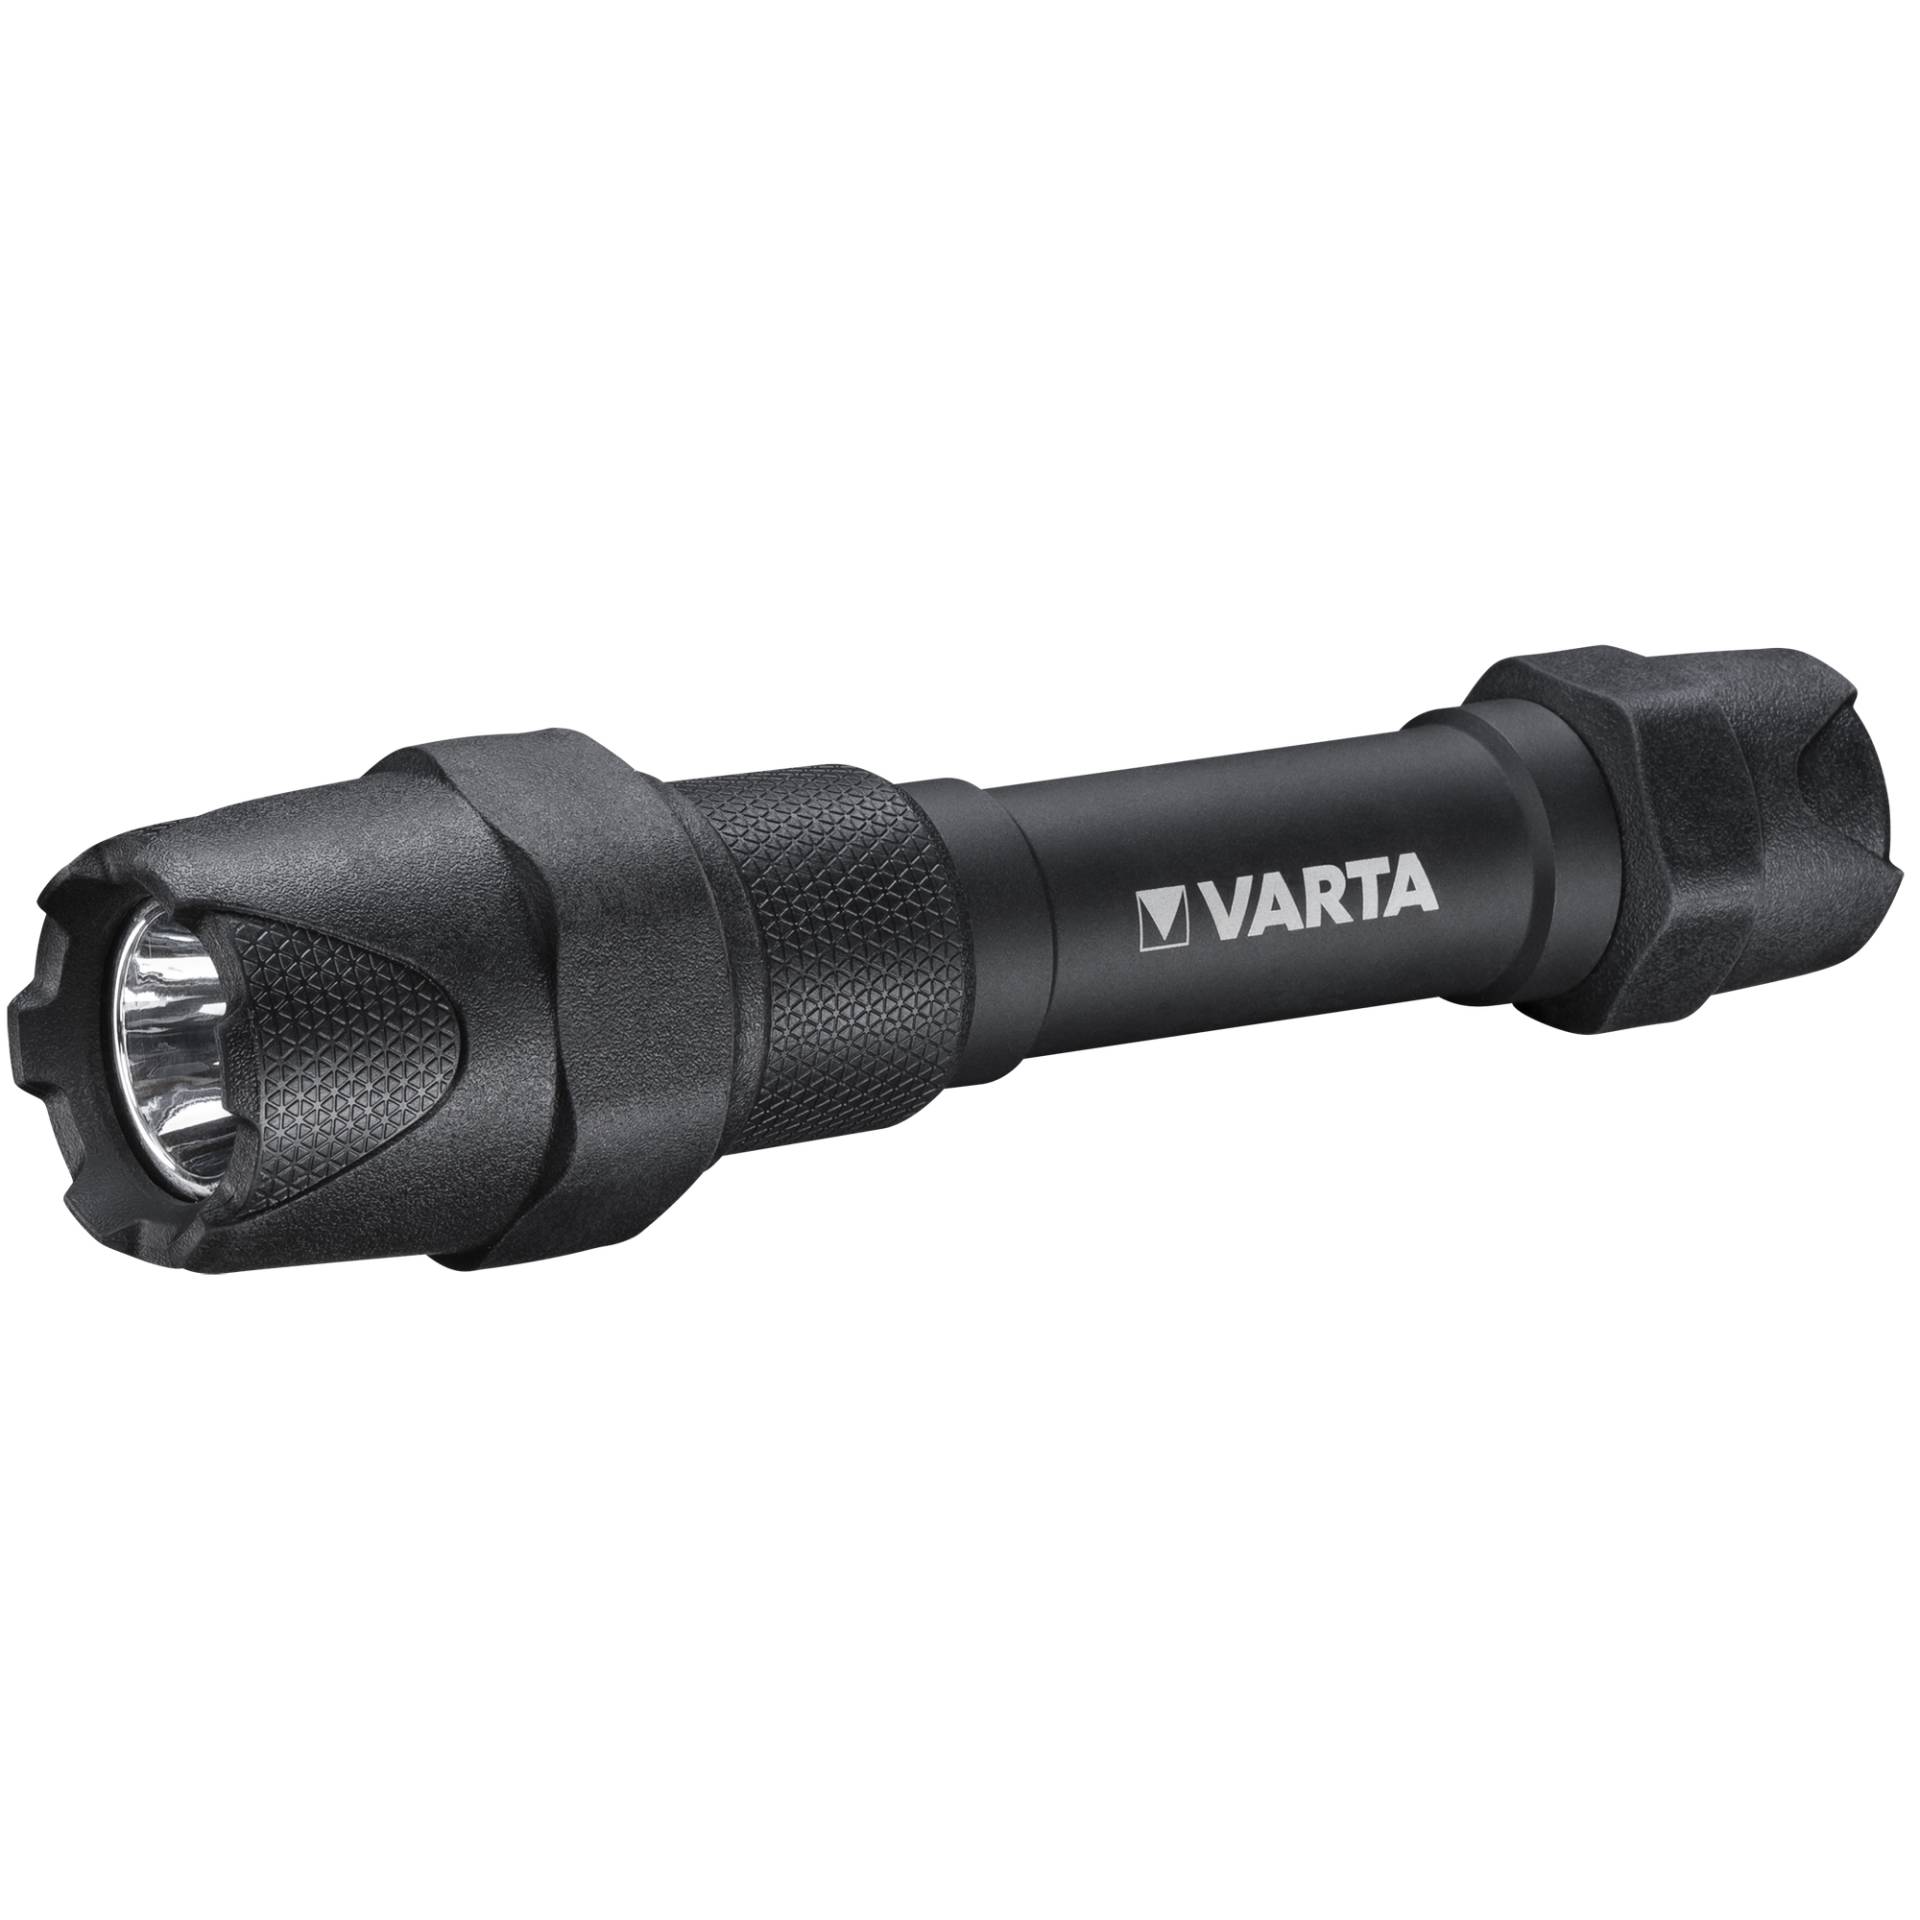 Varta Taschenlampe 'Indestructible F20 Pro' schwarz 350 lm von Varta